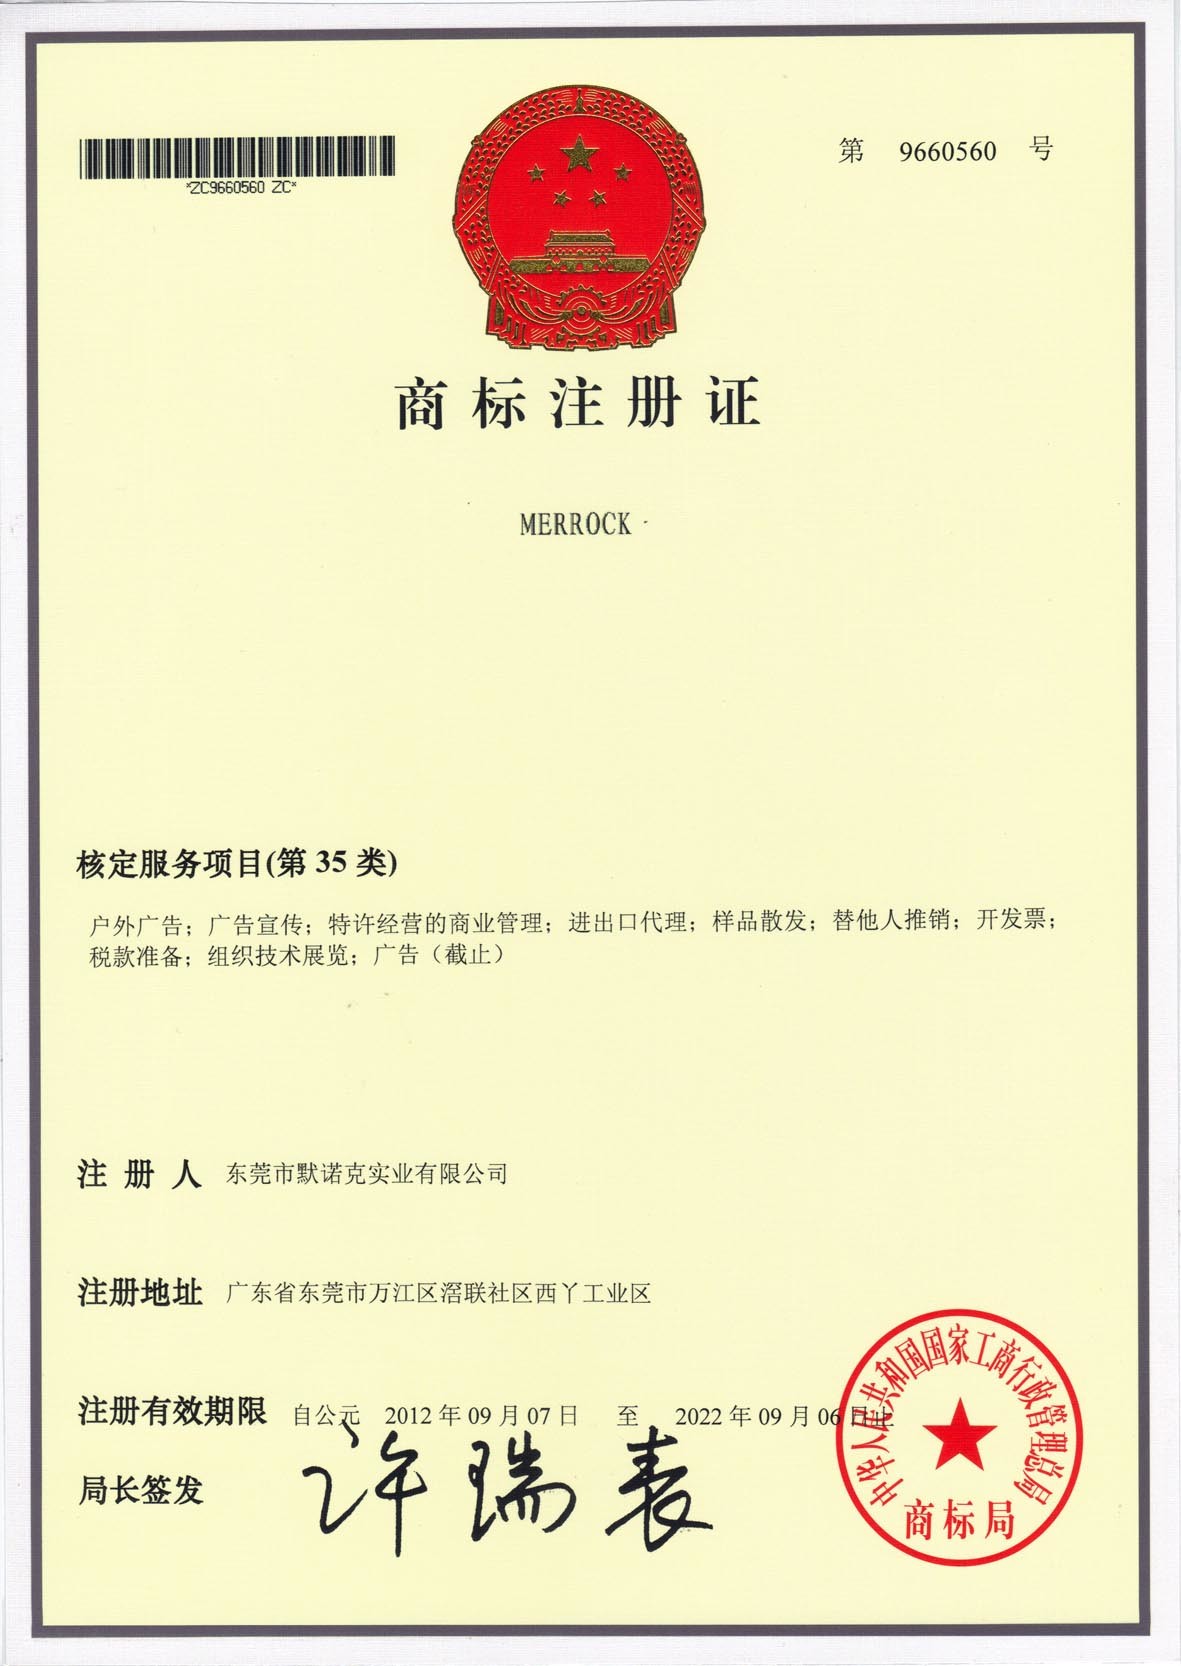 Dongguan Merrock Industry Co.,Ltd Certifications